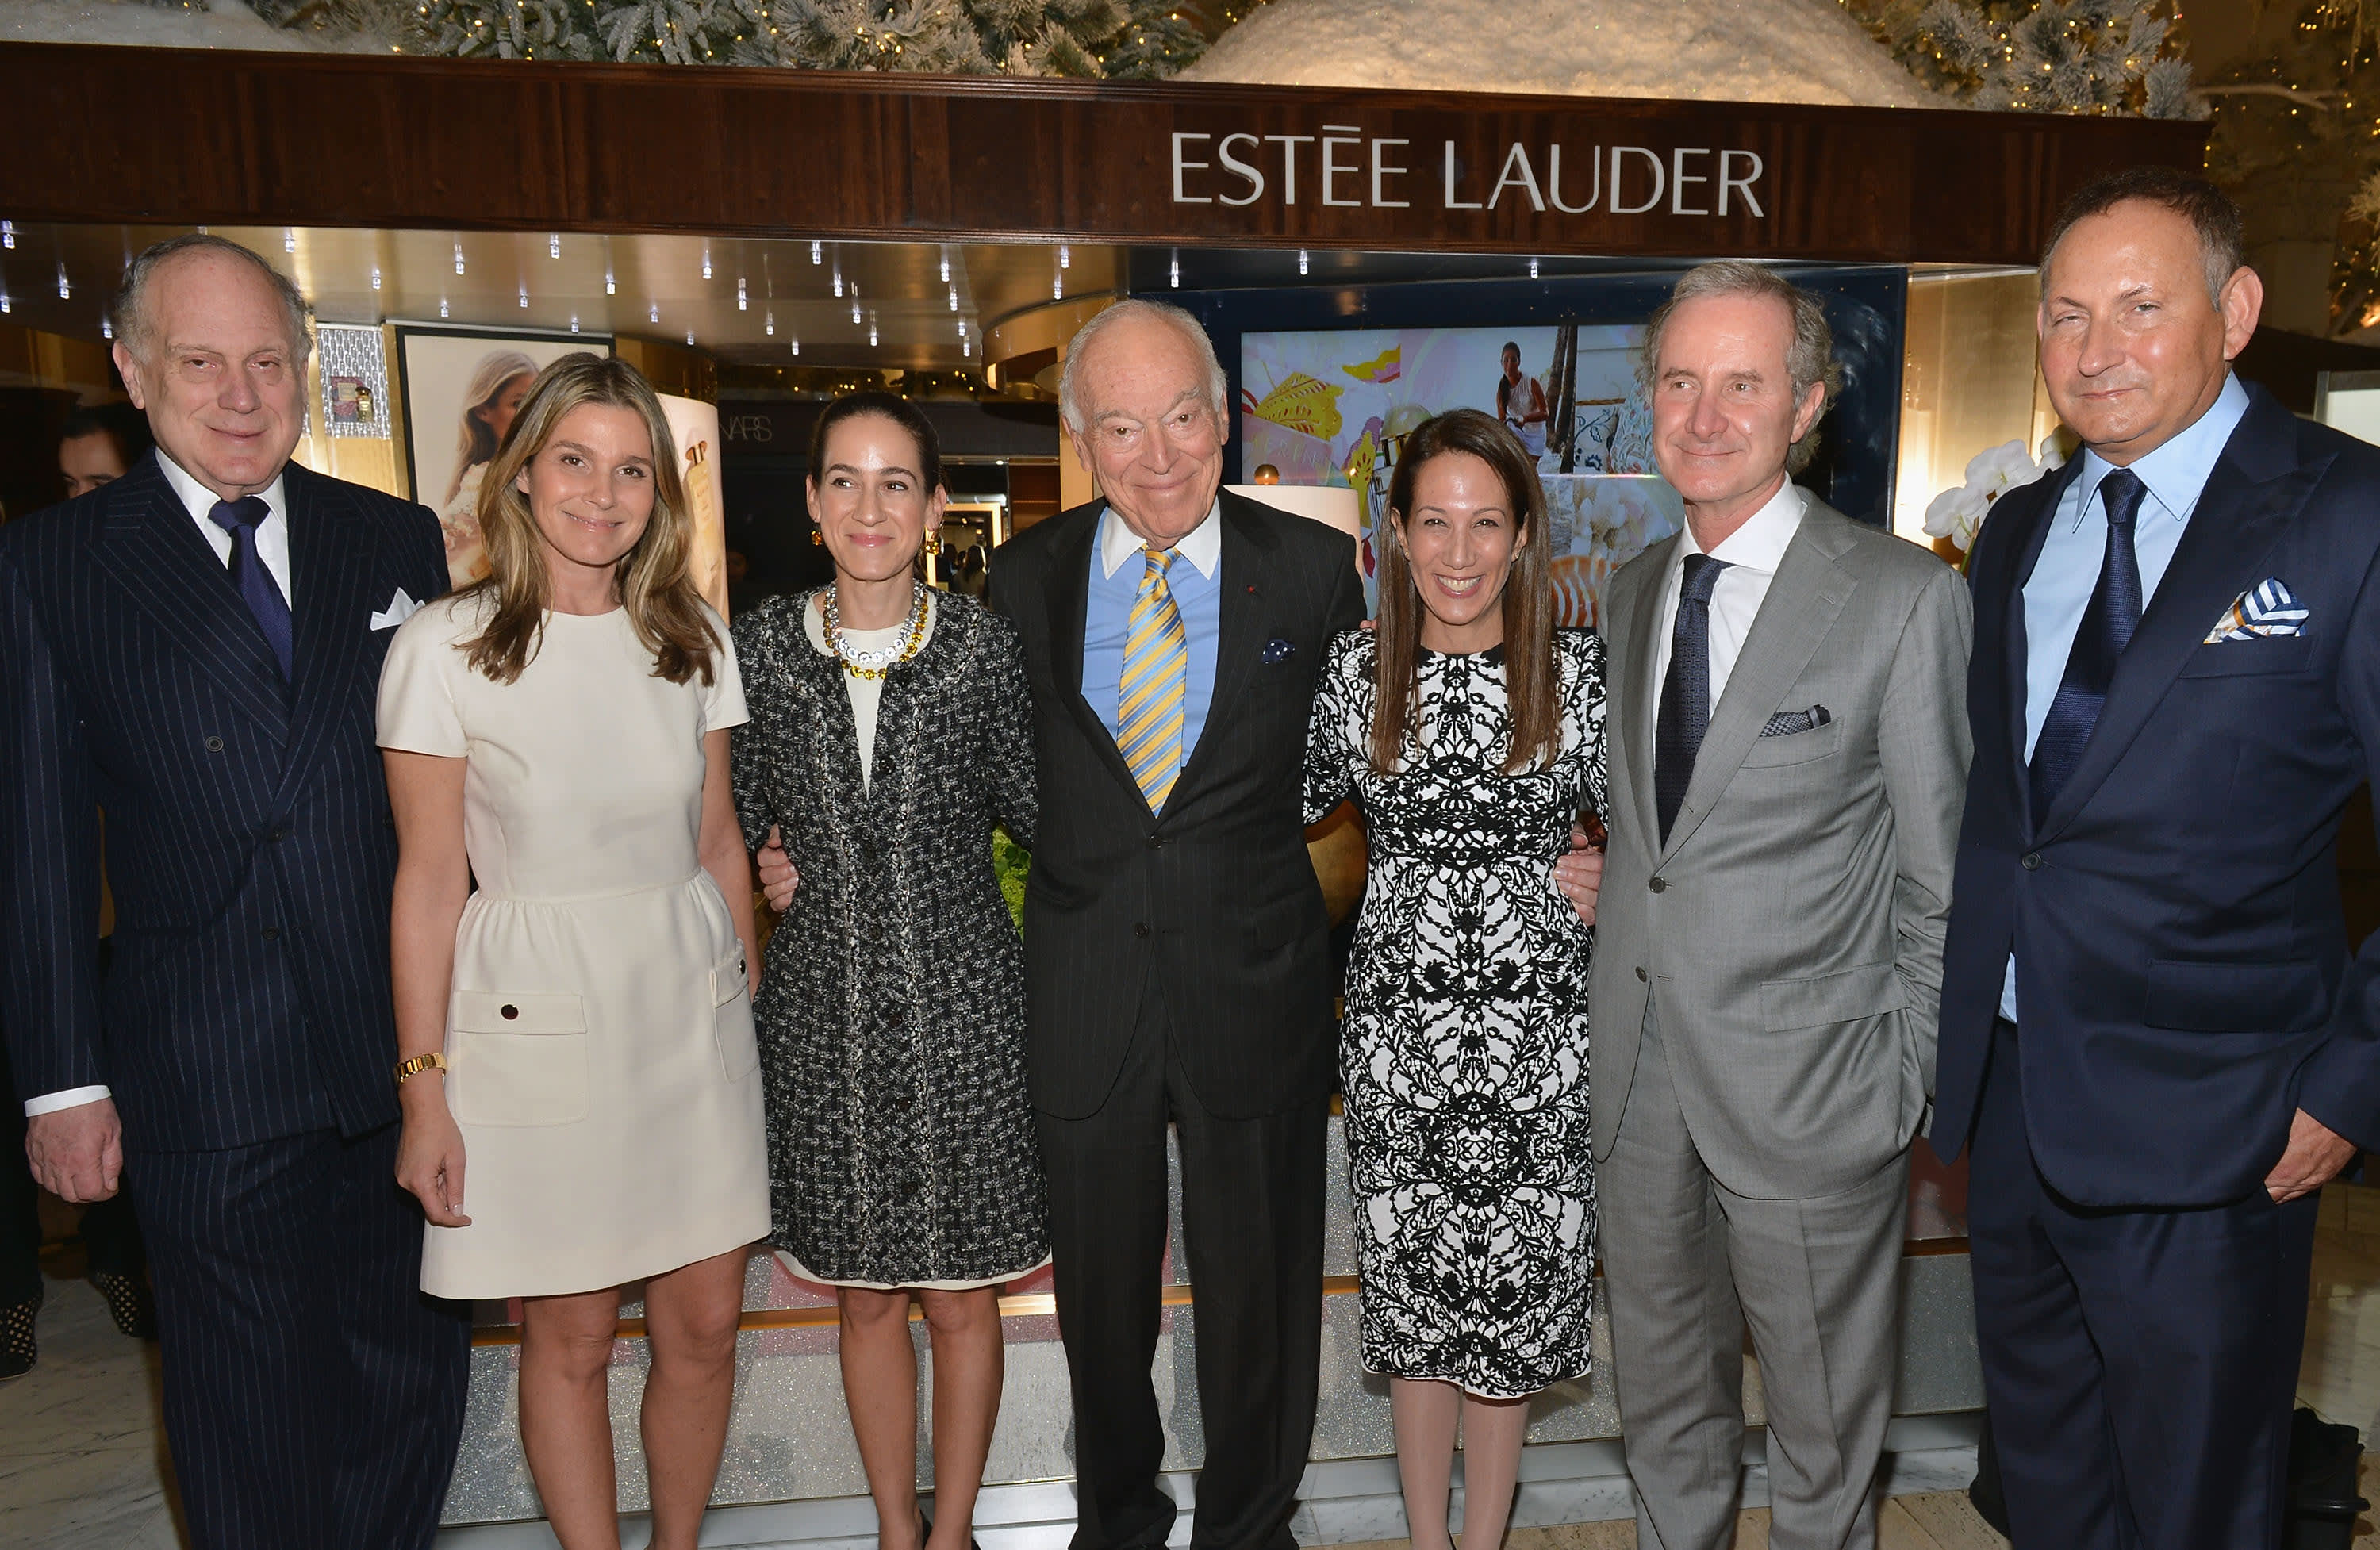 Estee Lauder Family Business - Aerin, Ronald, Leonard, and William Lauder  Interview